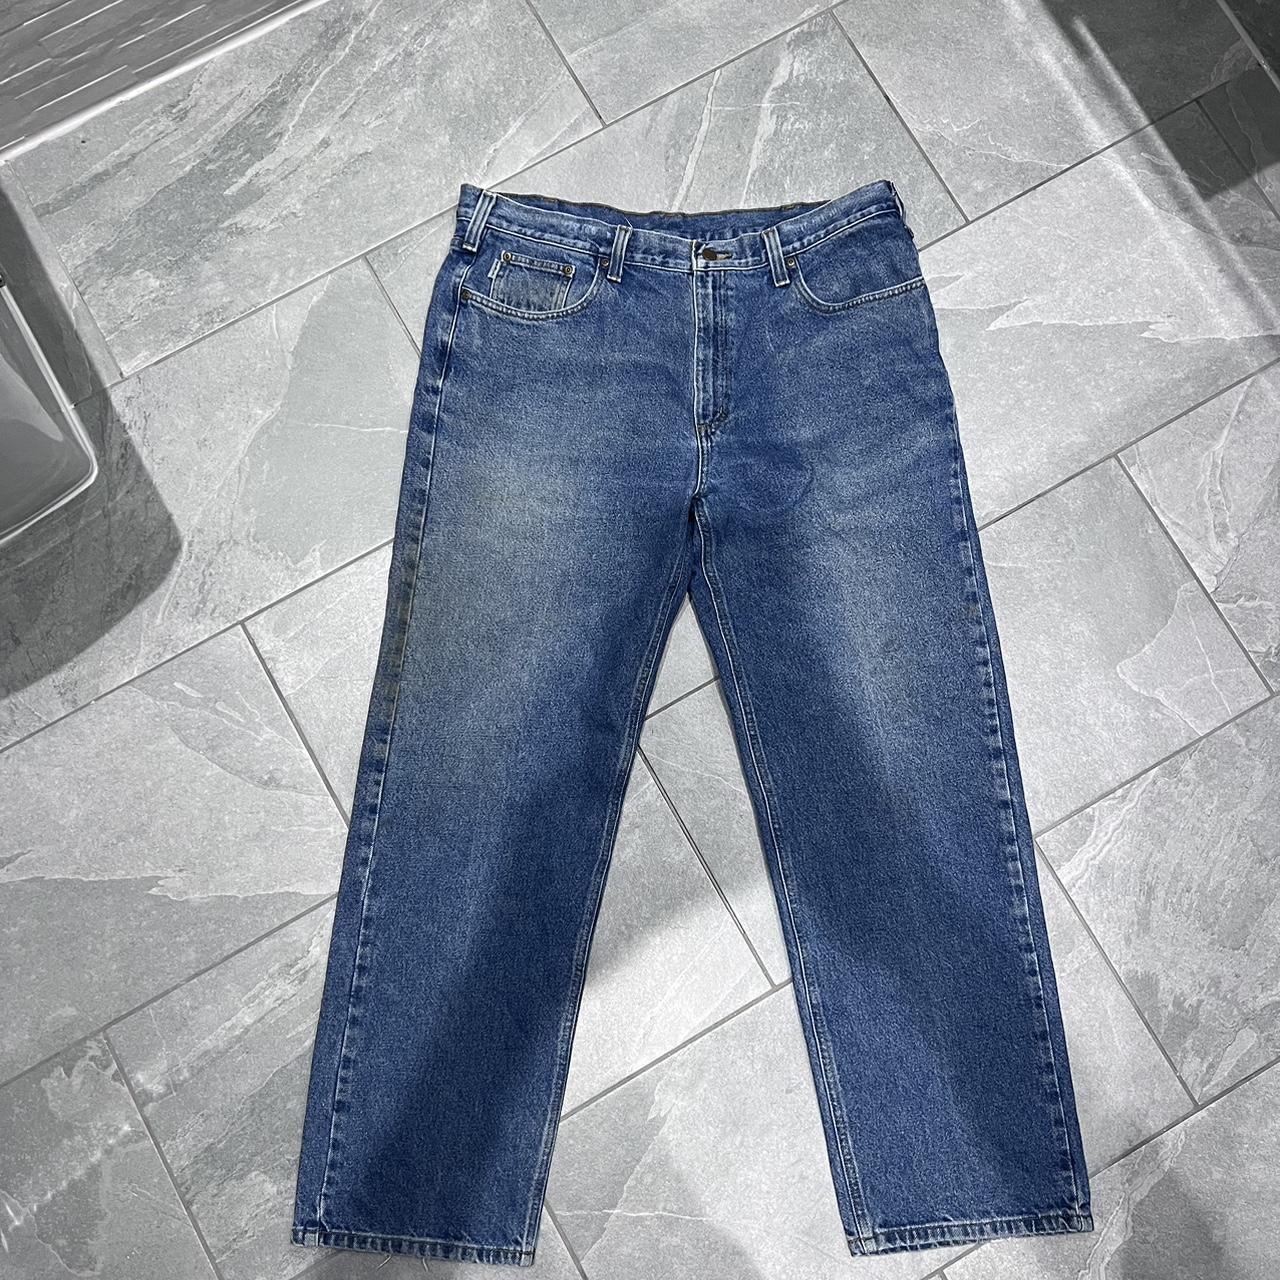 Vintage carhartt denim Jeans Carpenter 90s loose... - Depop